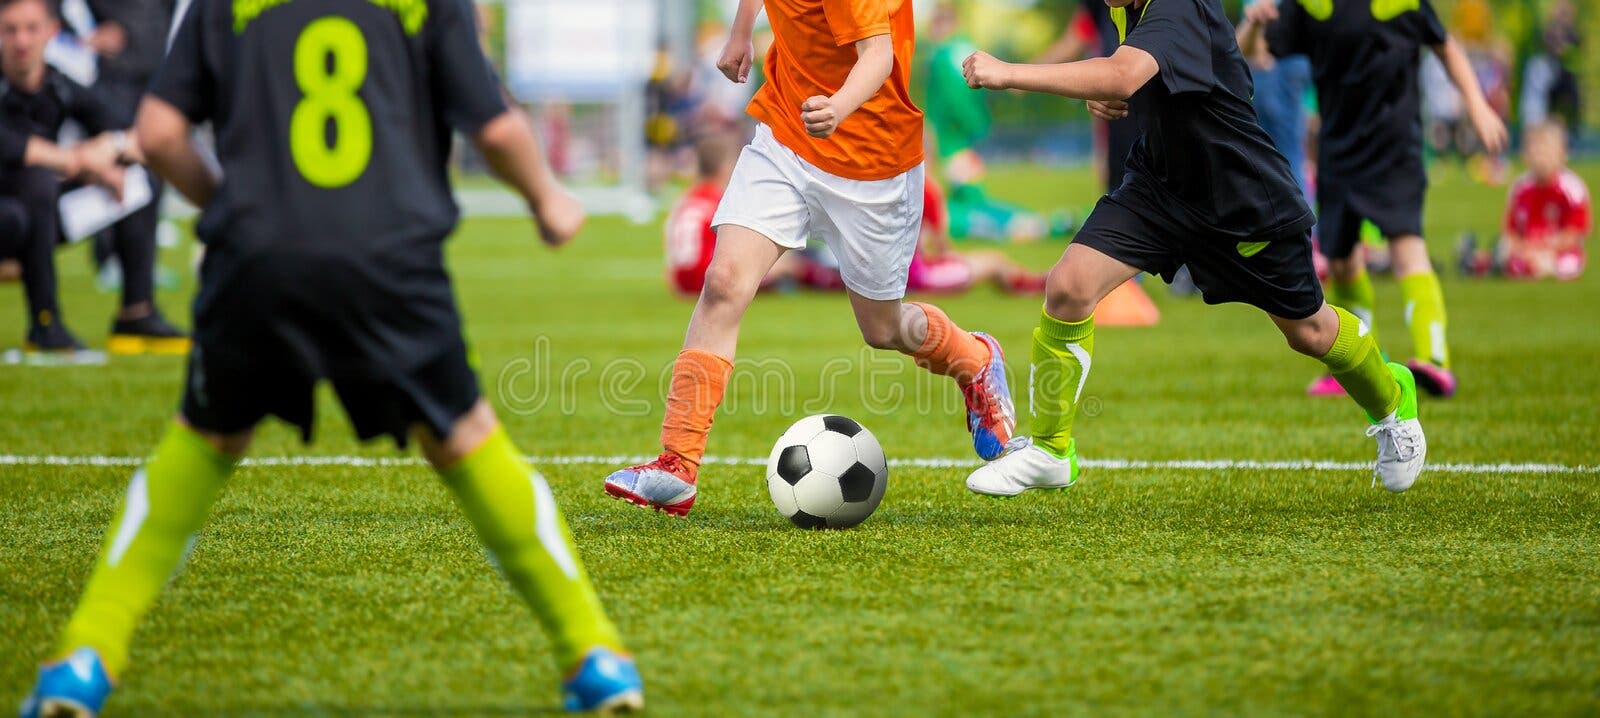 Dois jogadores de futebol masculino, jogadores de futebol driblando bola no  estádio durante o jogo de esporte no estádio cortado. Conceito de desporto  fotos, imagens de © vova130555@gmail.com #535531890